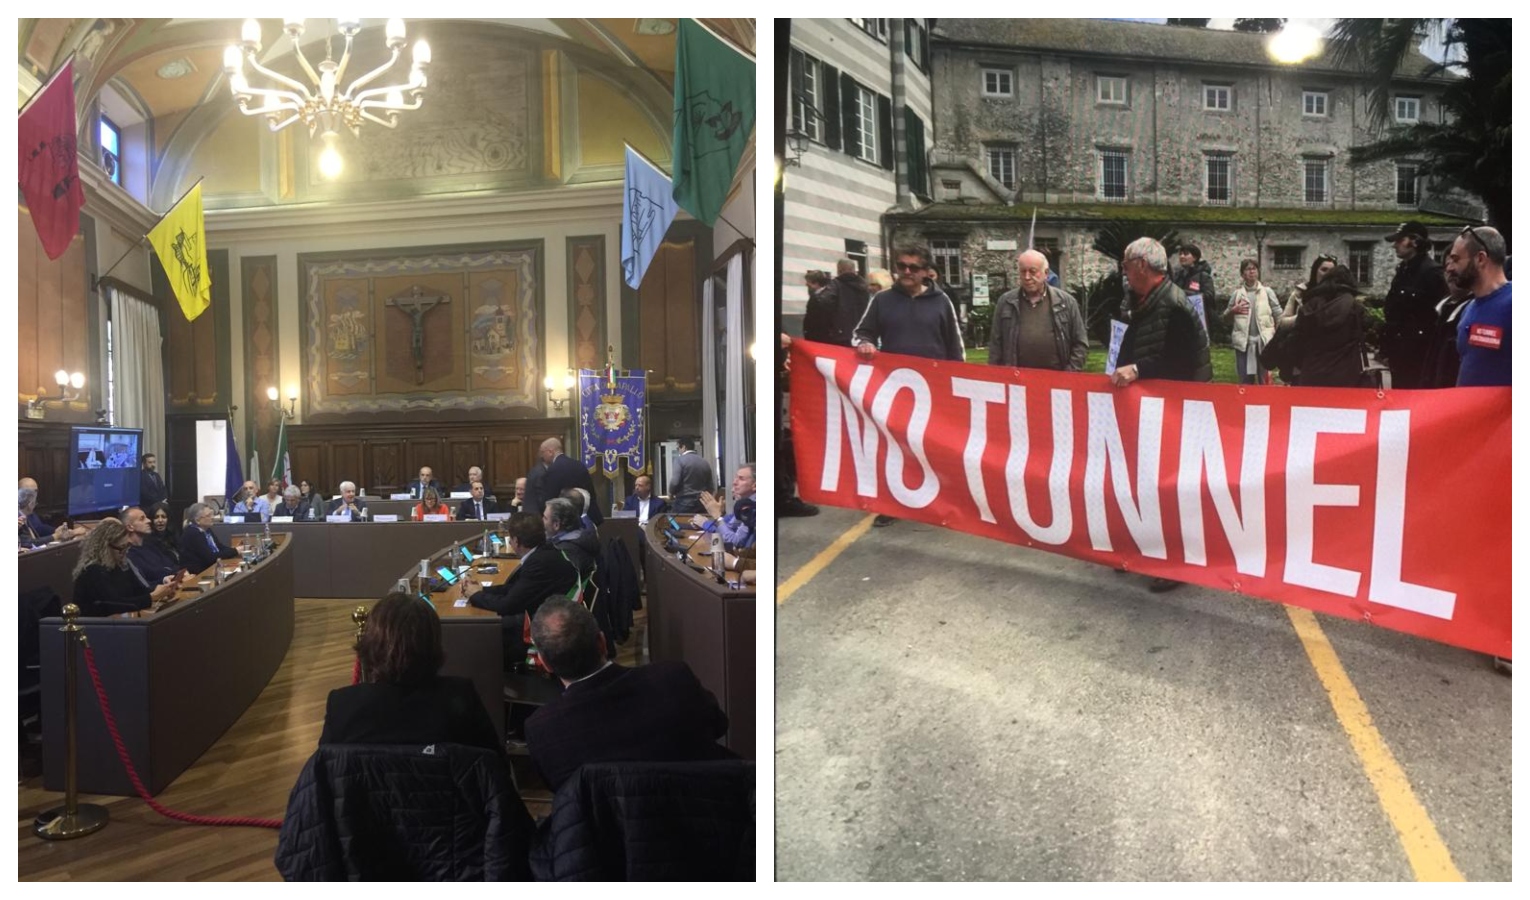 Tunnel Valfontanabuona, assemblea a Rapallo tra proteste e consensi